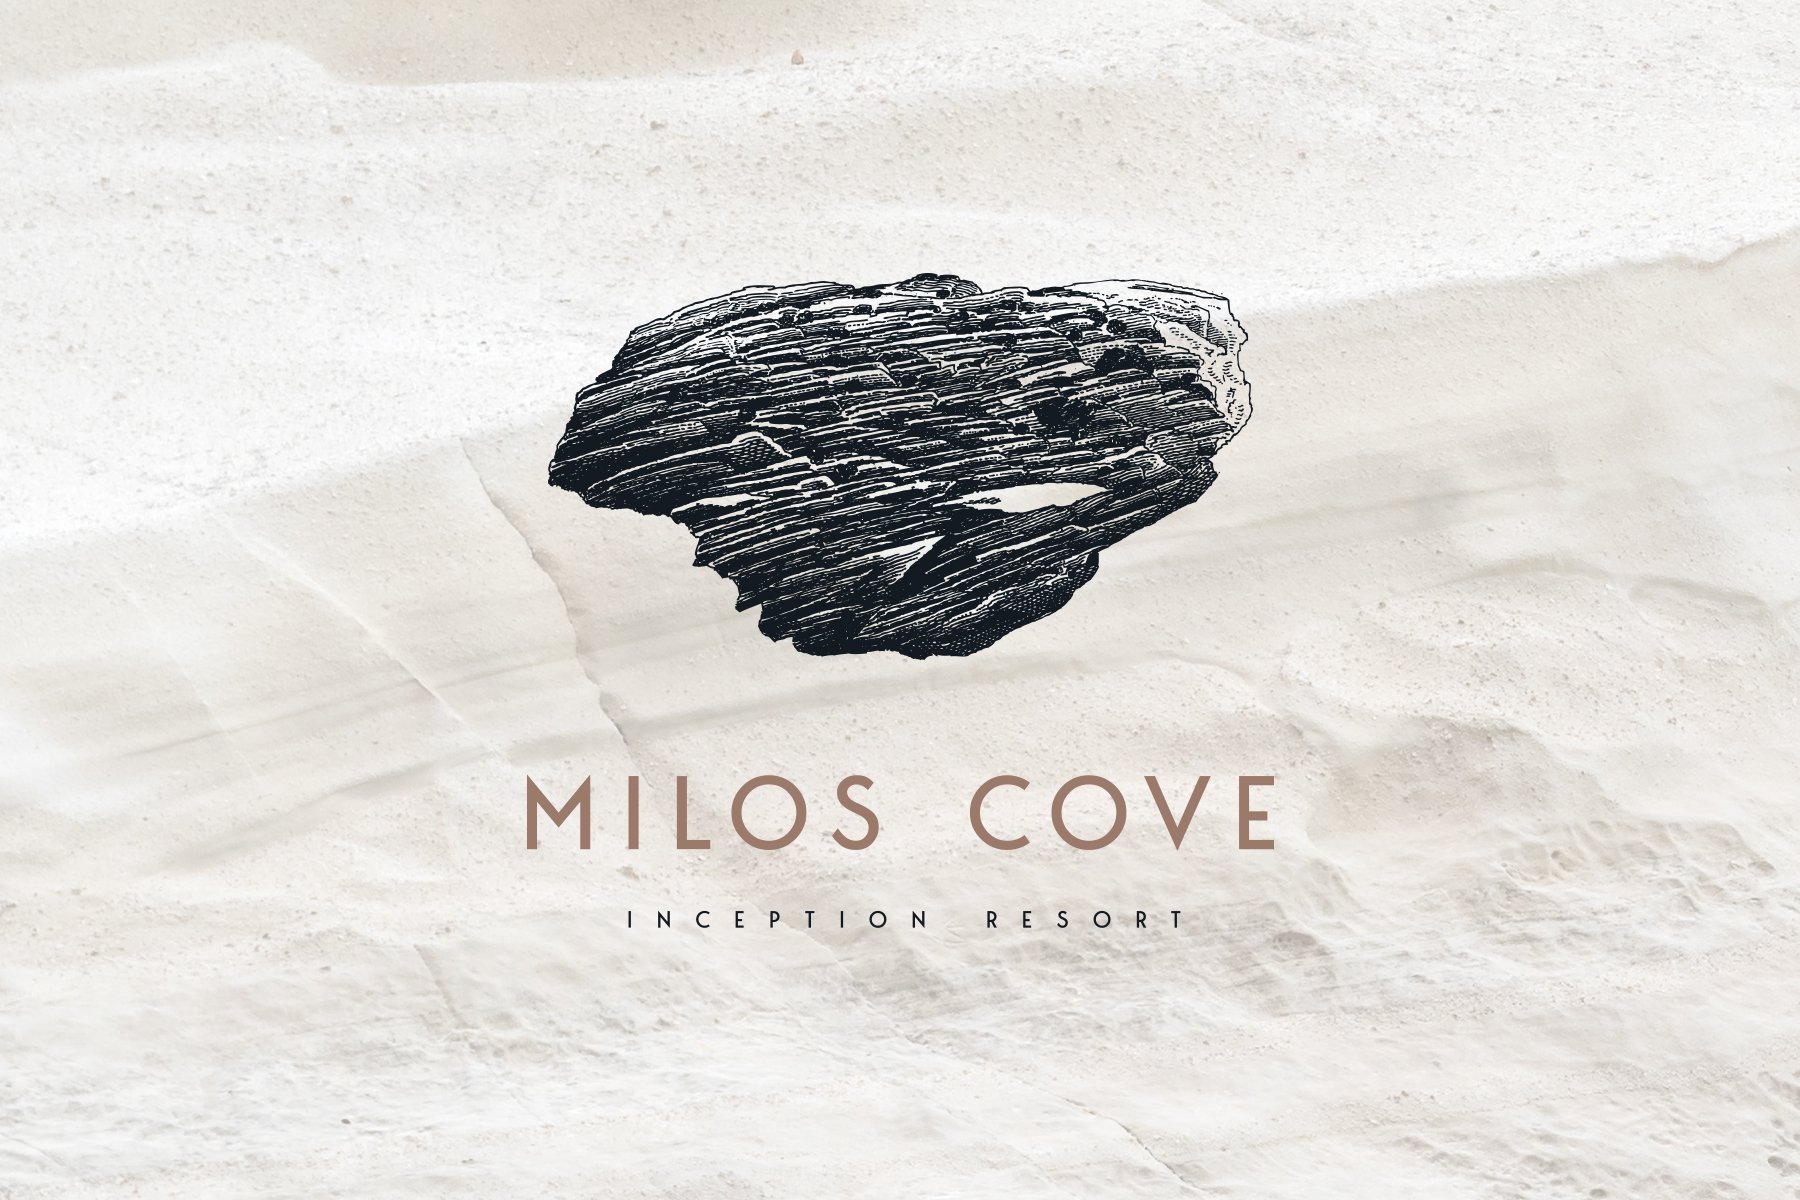 Μilos Cove Inception Resort-A soul elevating experience with Obsidian references